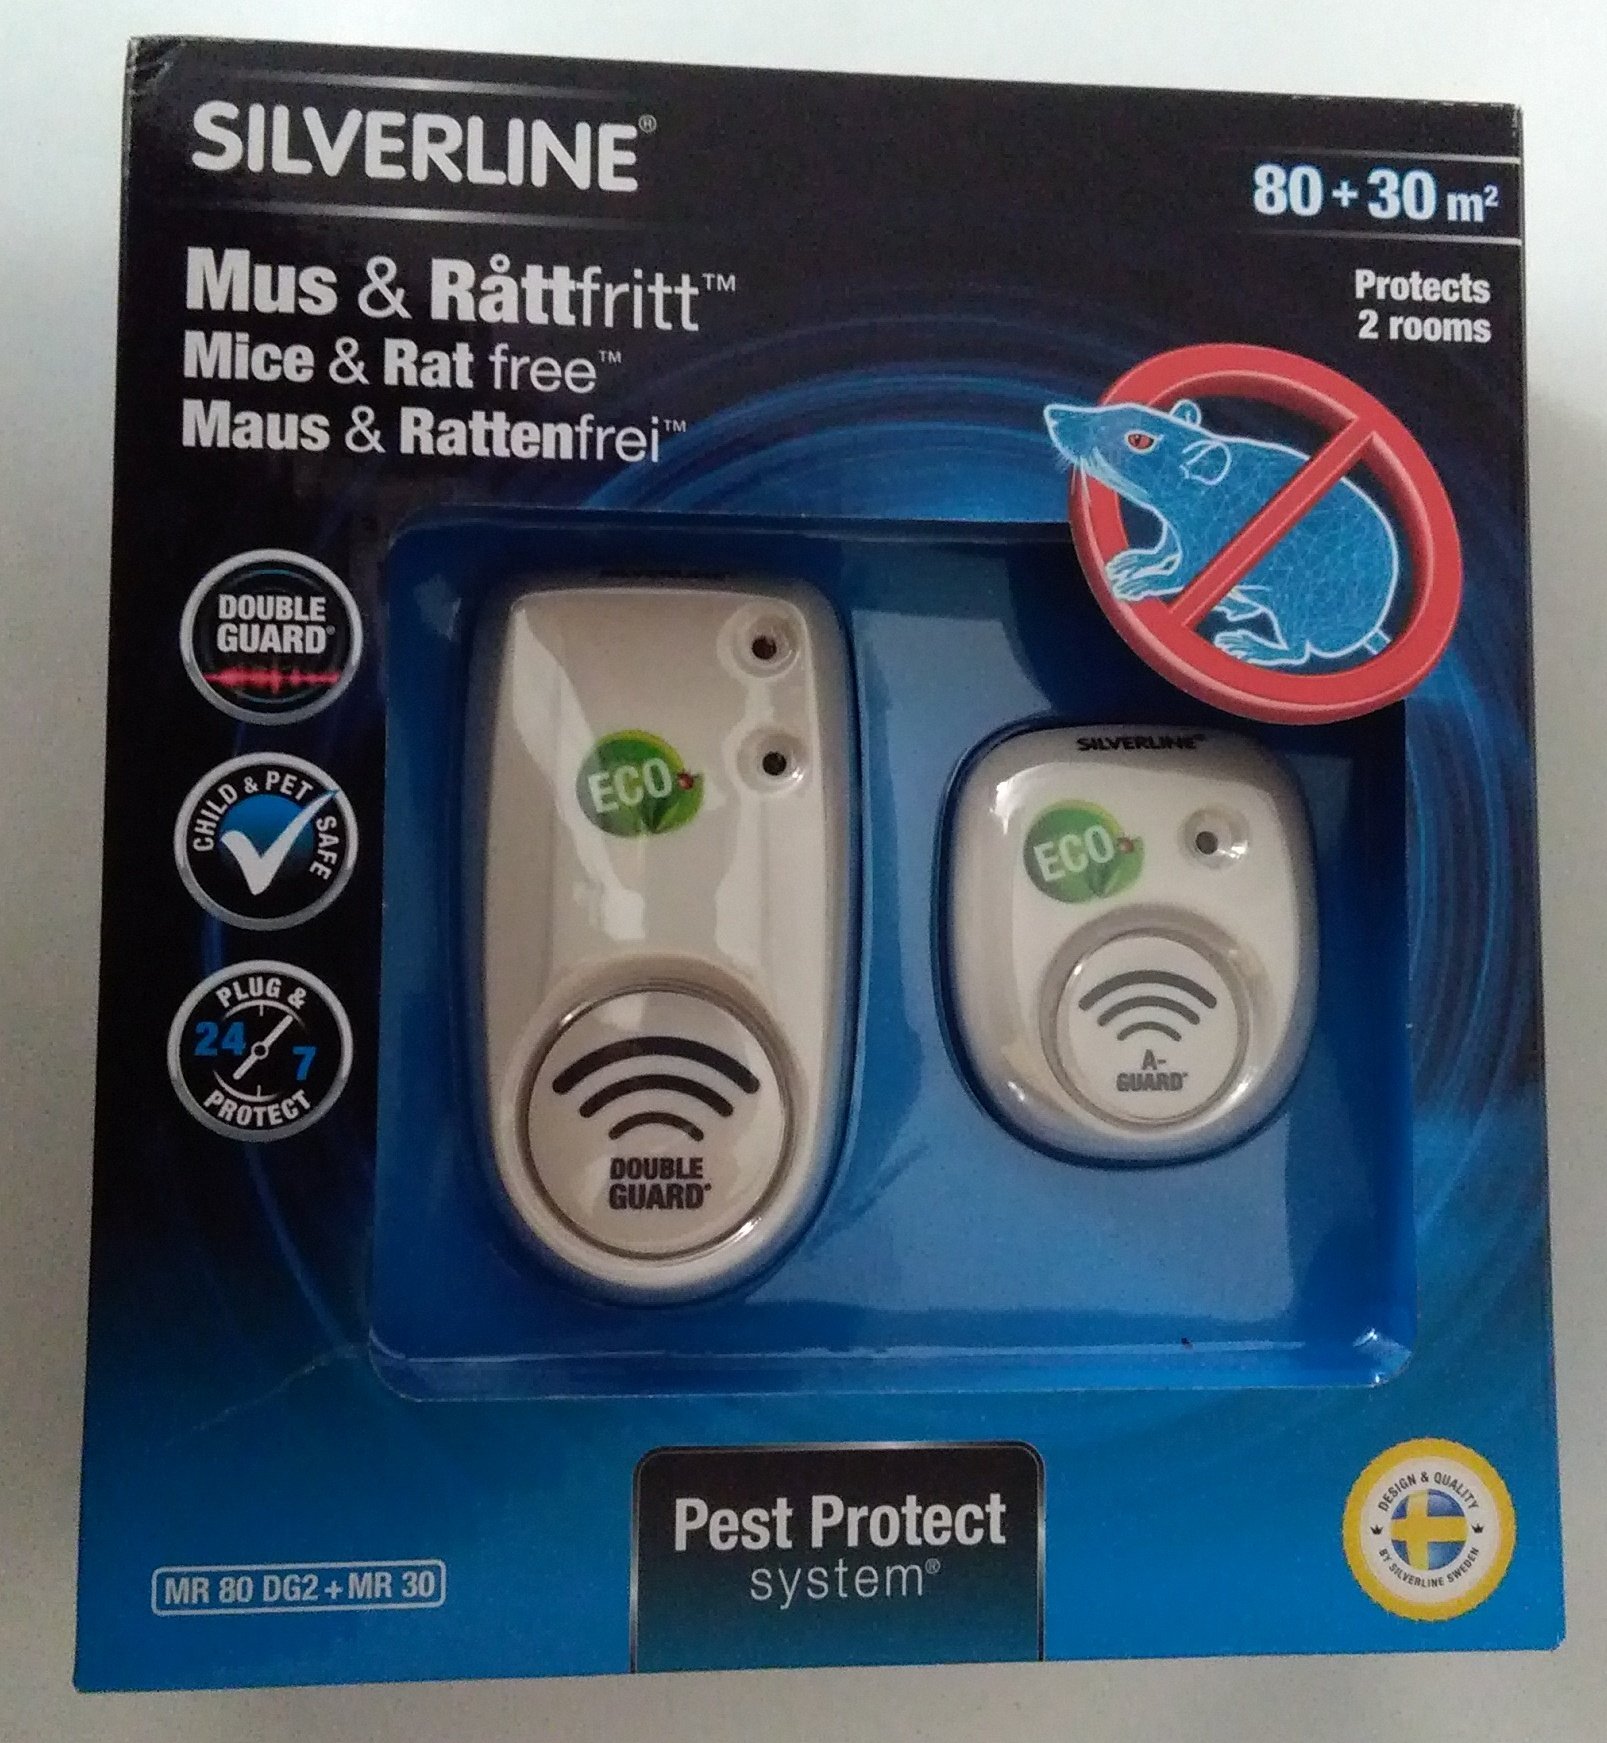 Silverline Mr 80 DG2 + Mr 30, 2 Geräte: 1 x 80 m² und 1 x 30 m² – Weiß